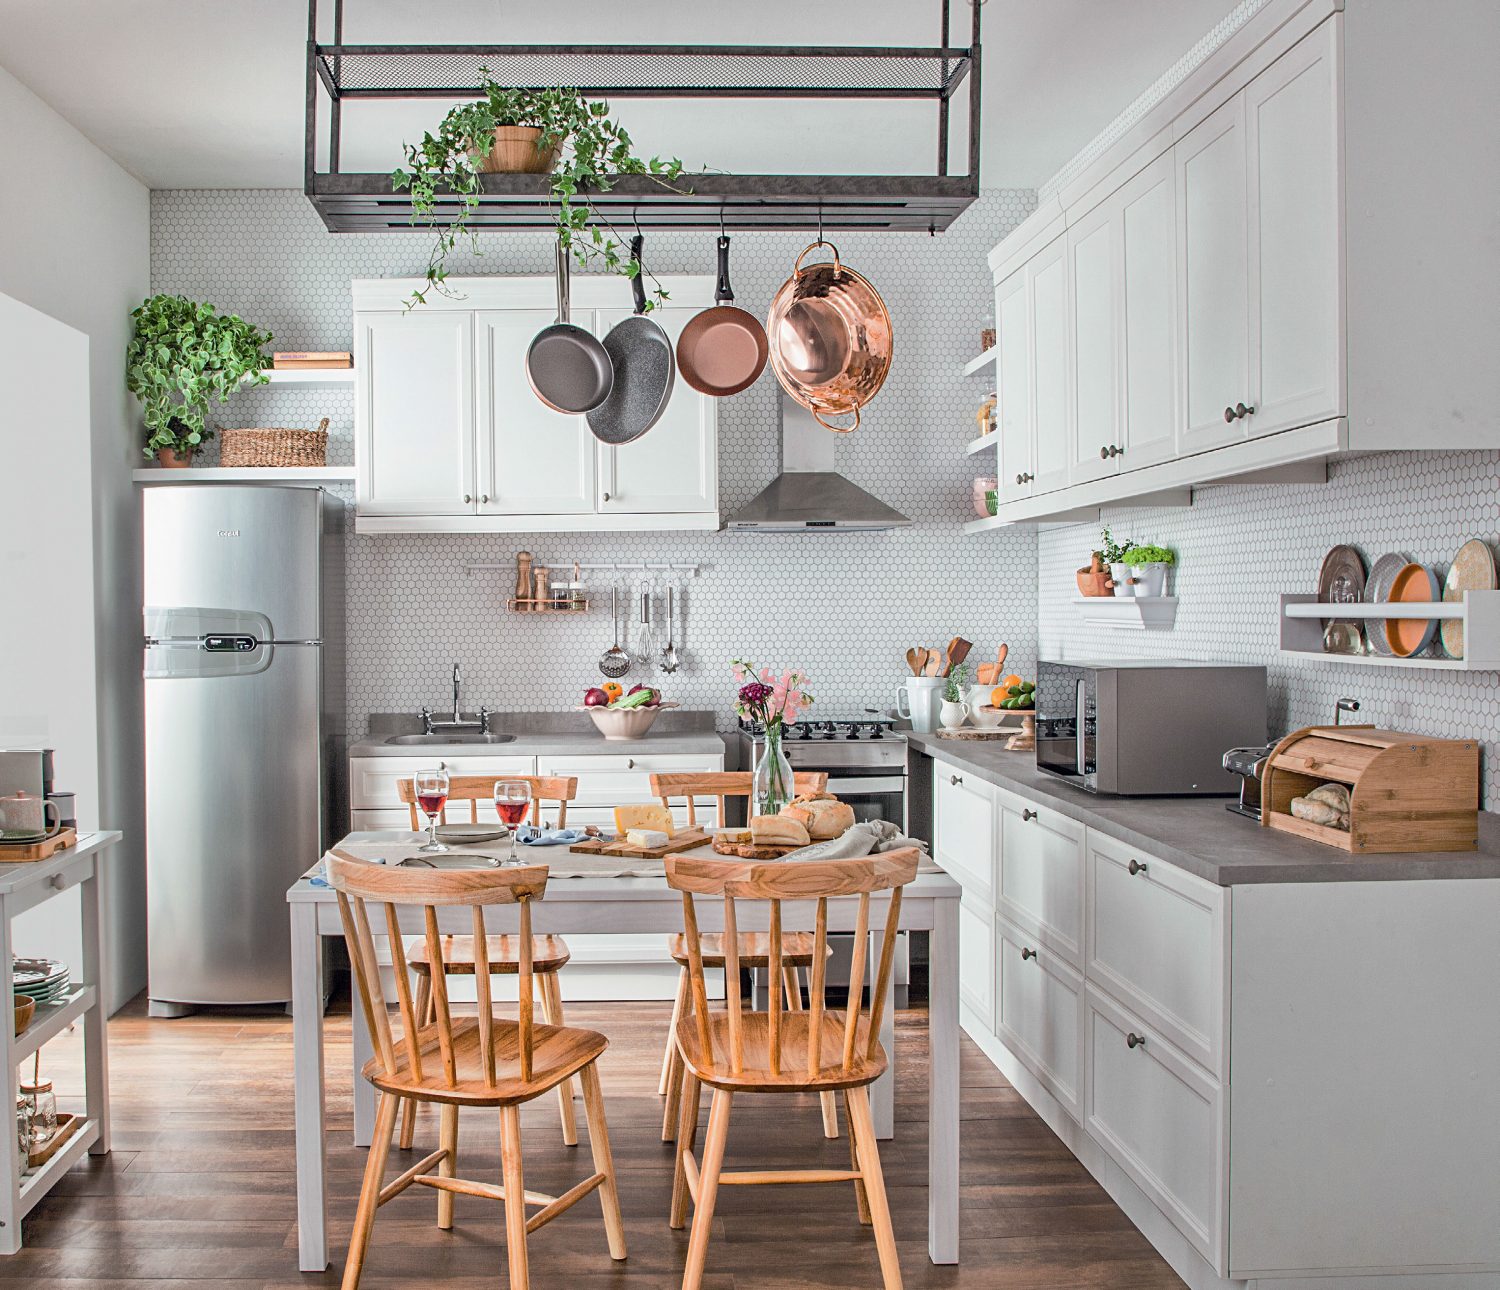  9 m² vitt kök med retrokänsla är synonymt med personlighet